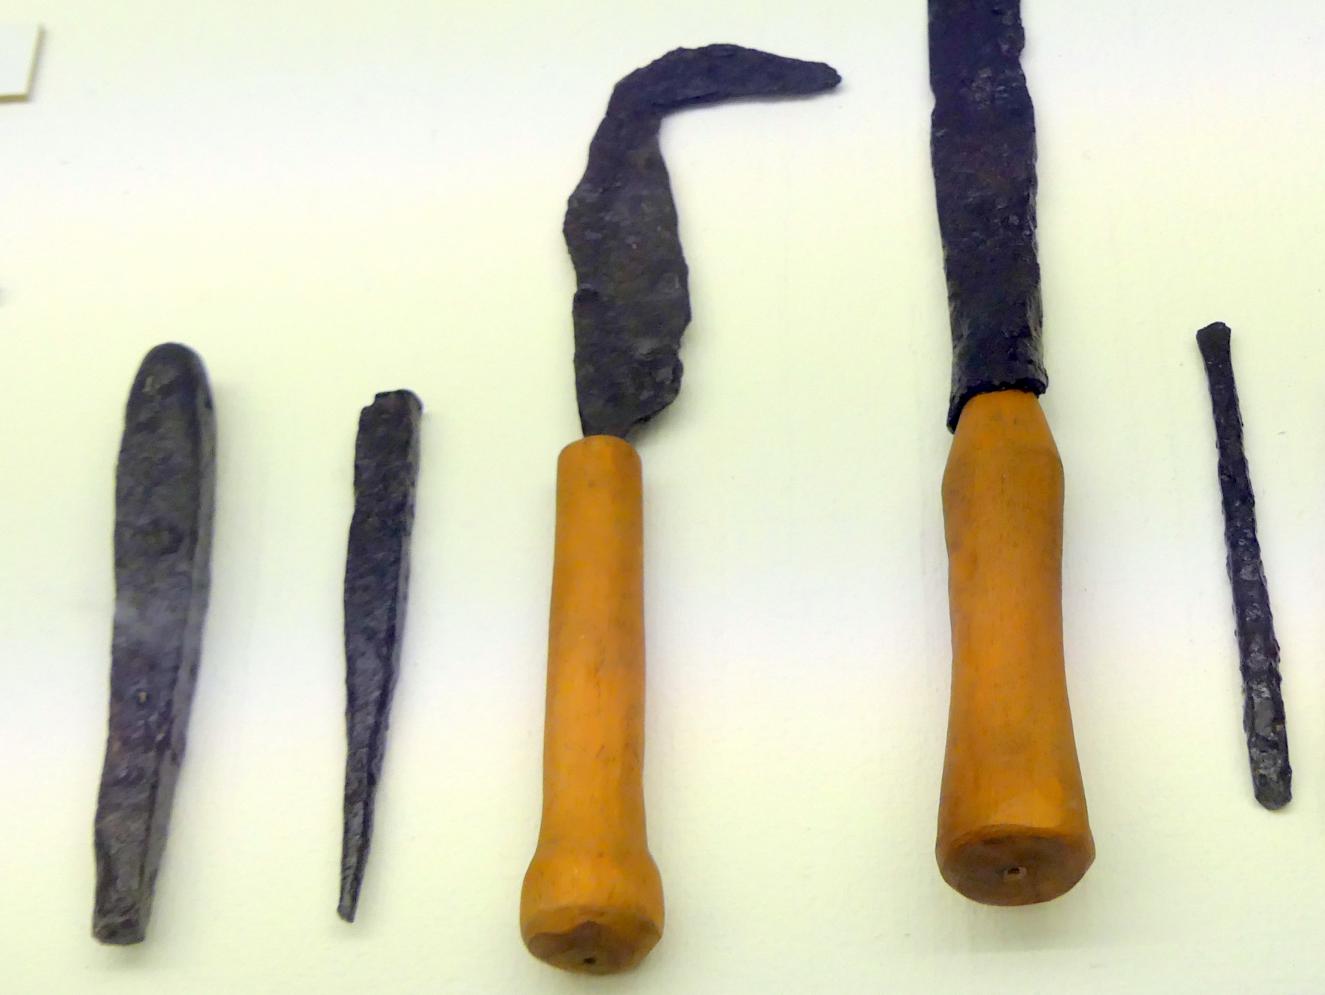 Messer, Spätlatènezeit D, 700 - 100 v. Chr., Bild 1/2